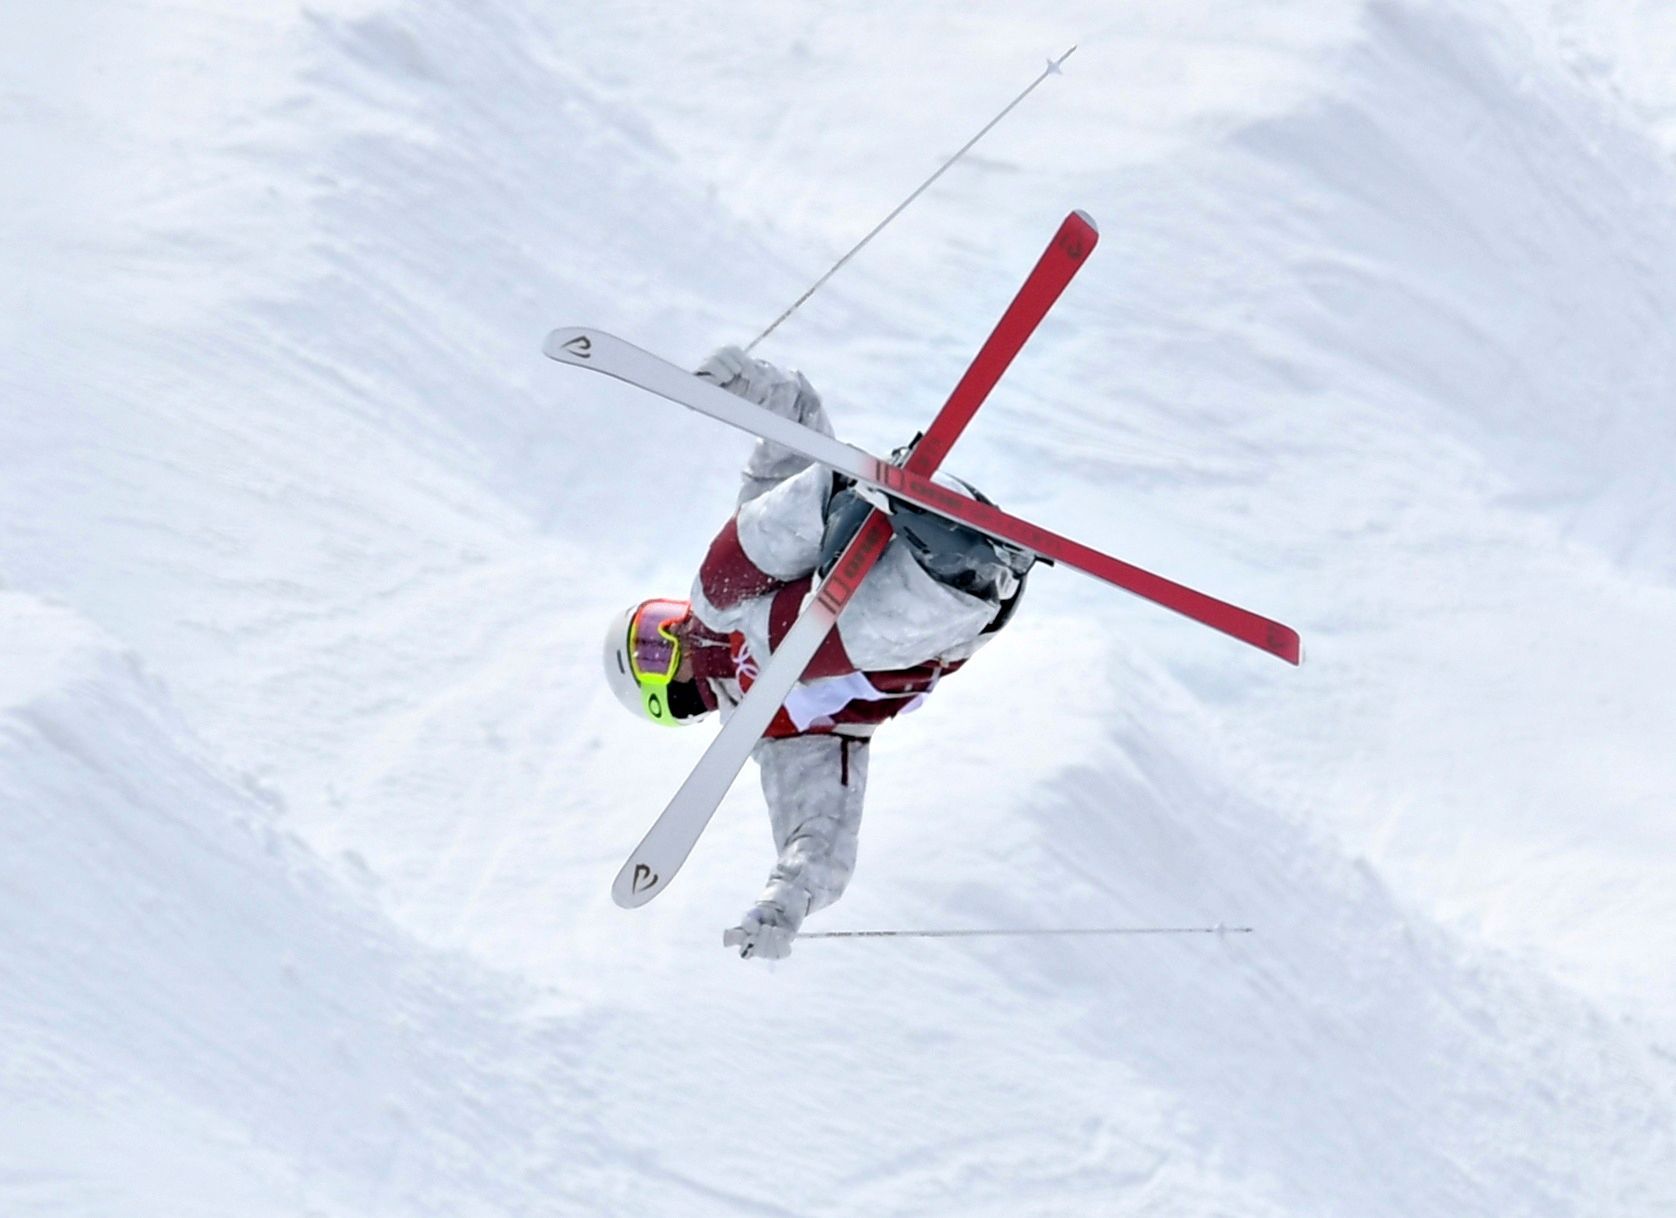 OH 2018, akrobatické lyžování, moguly, kvalifikace, Mikael Kingsbury